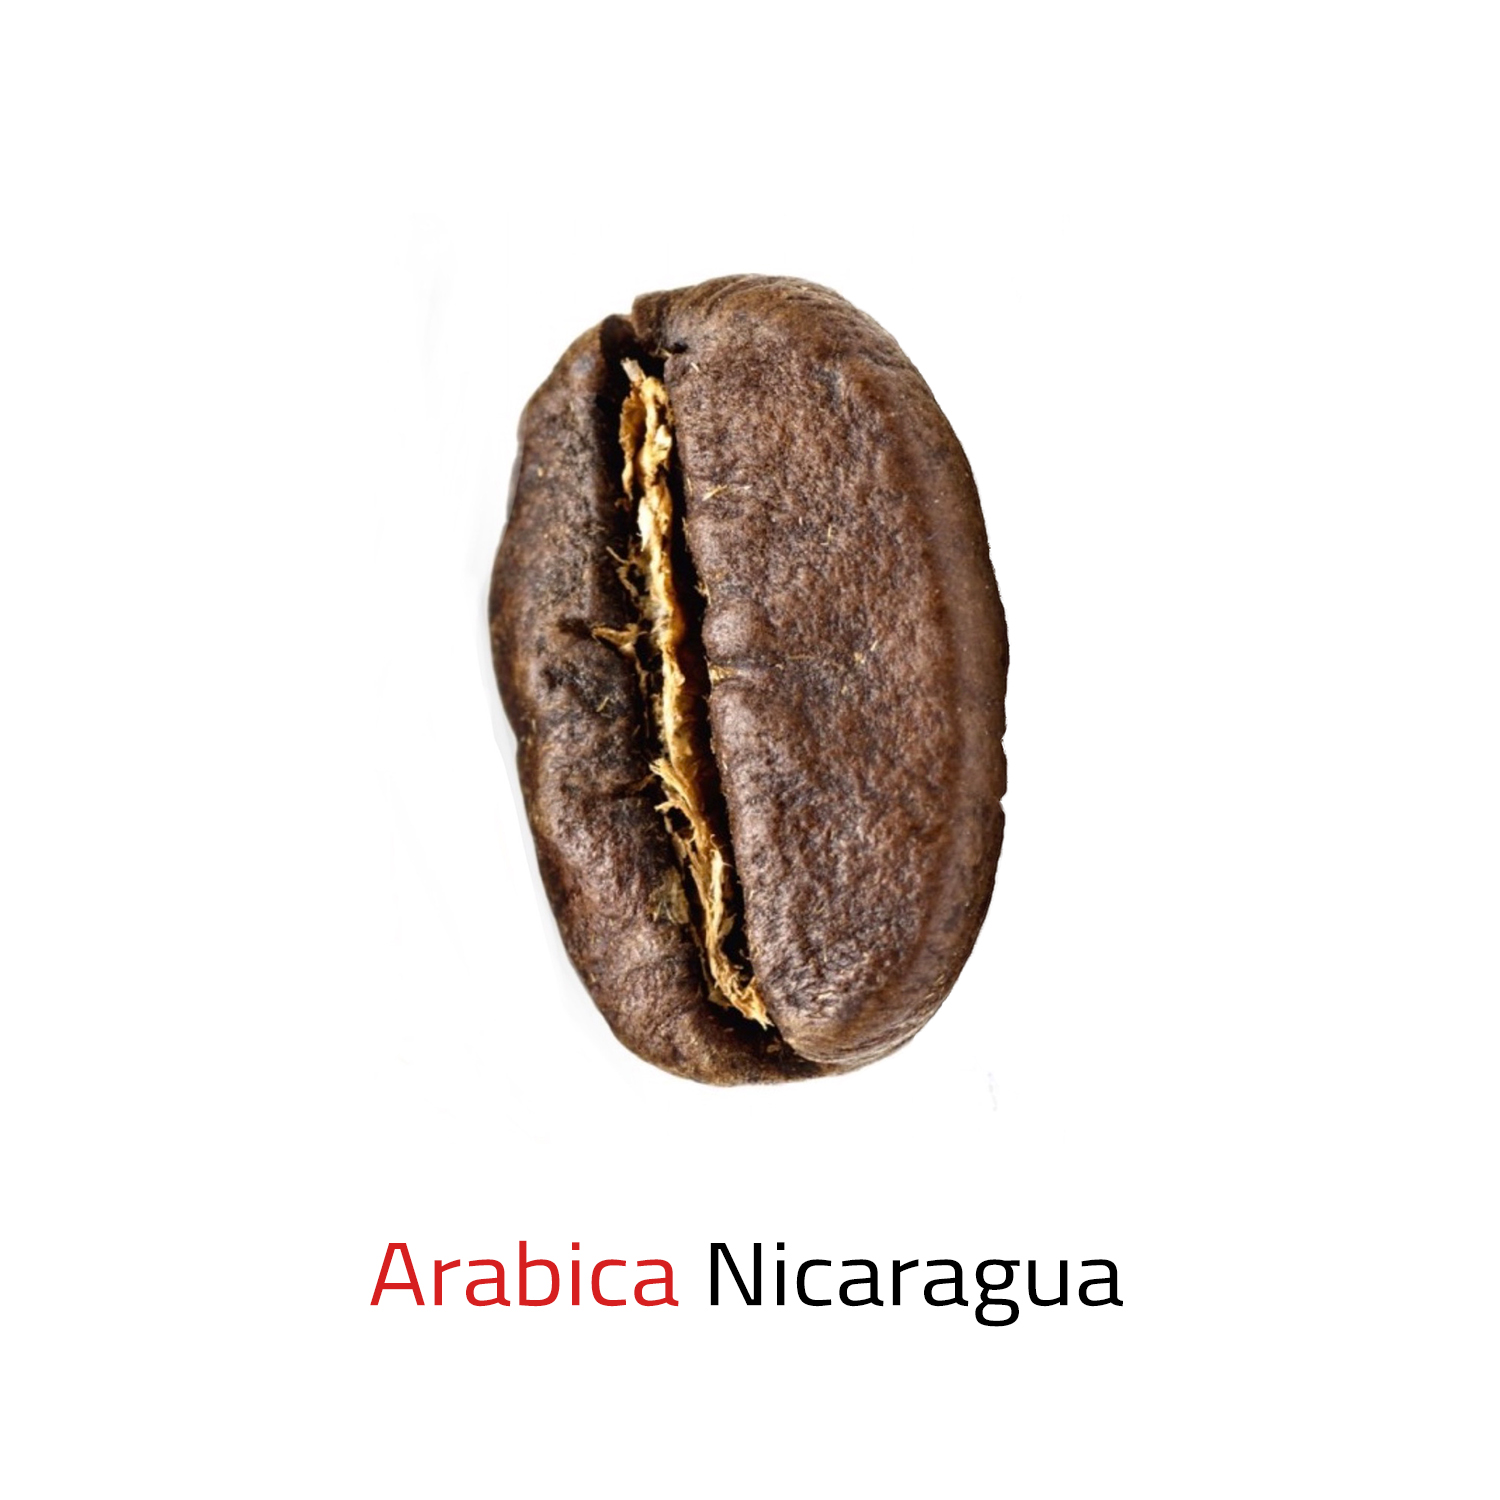 Čerstvě pražená káva zrnková Arabica Nicaragua 